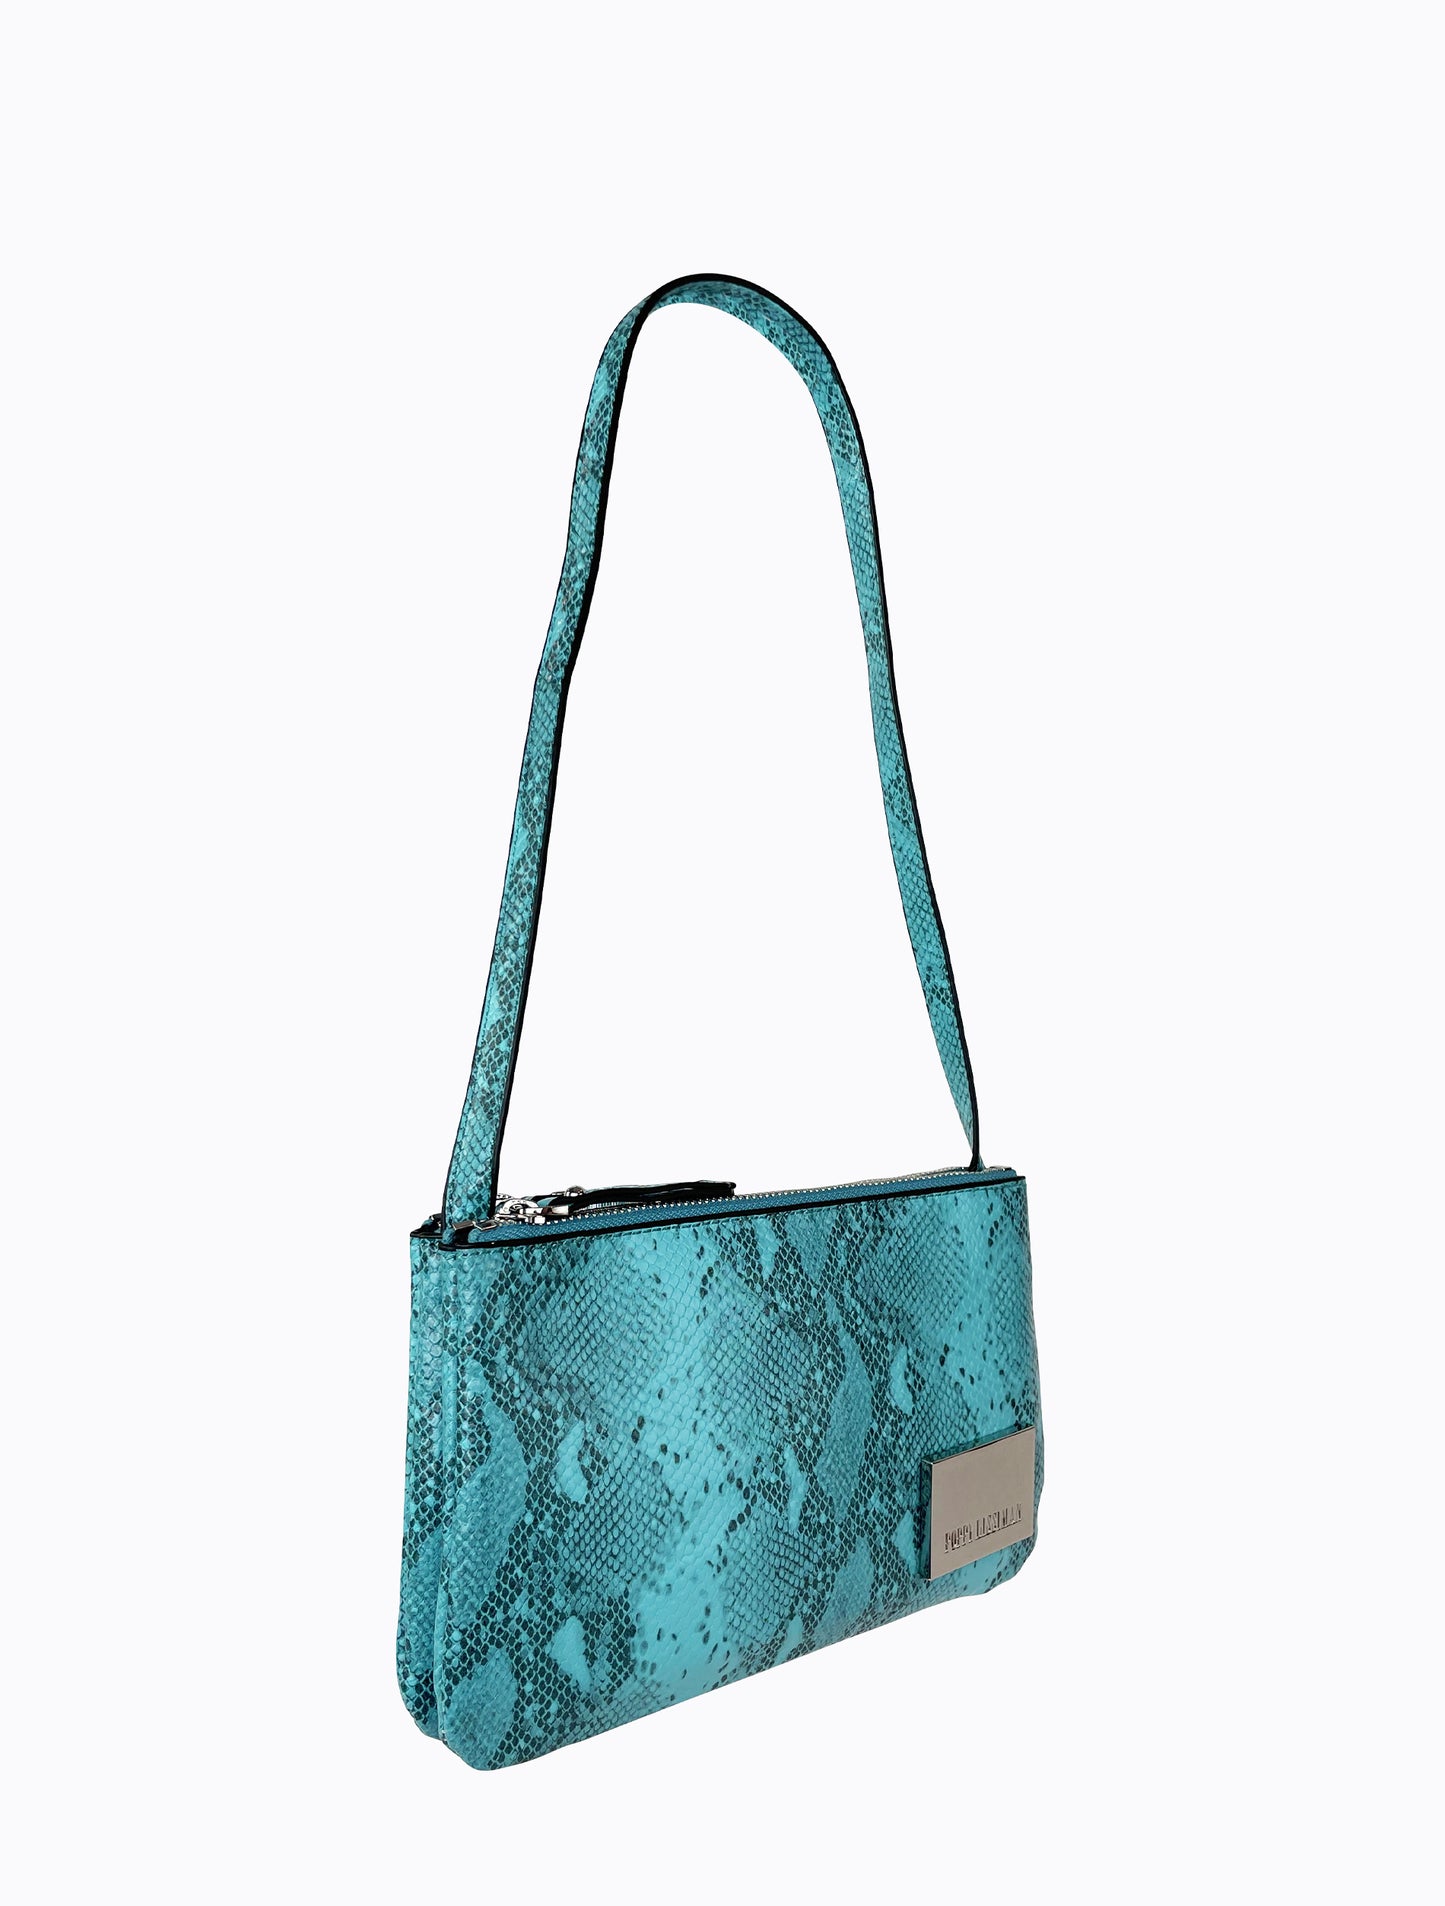 Junior Bag - Turquoise